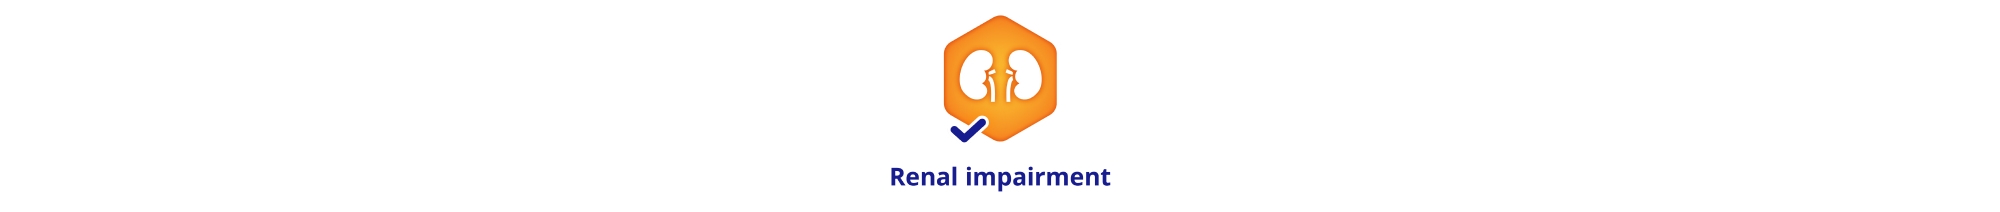 Renal impairment